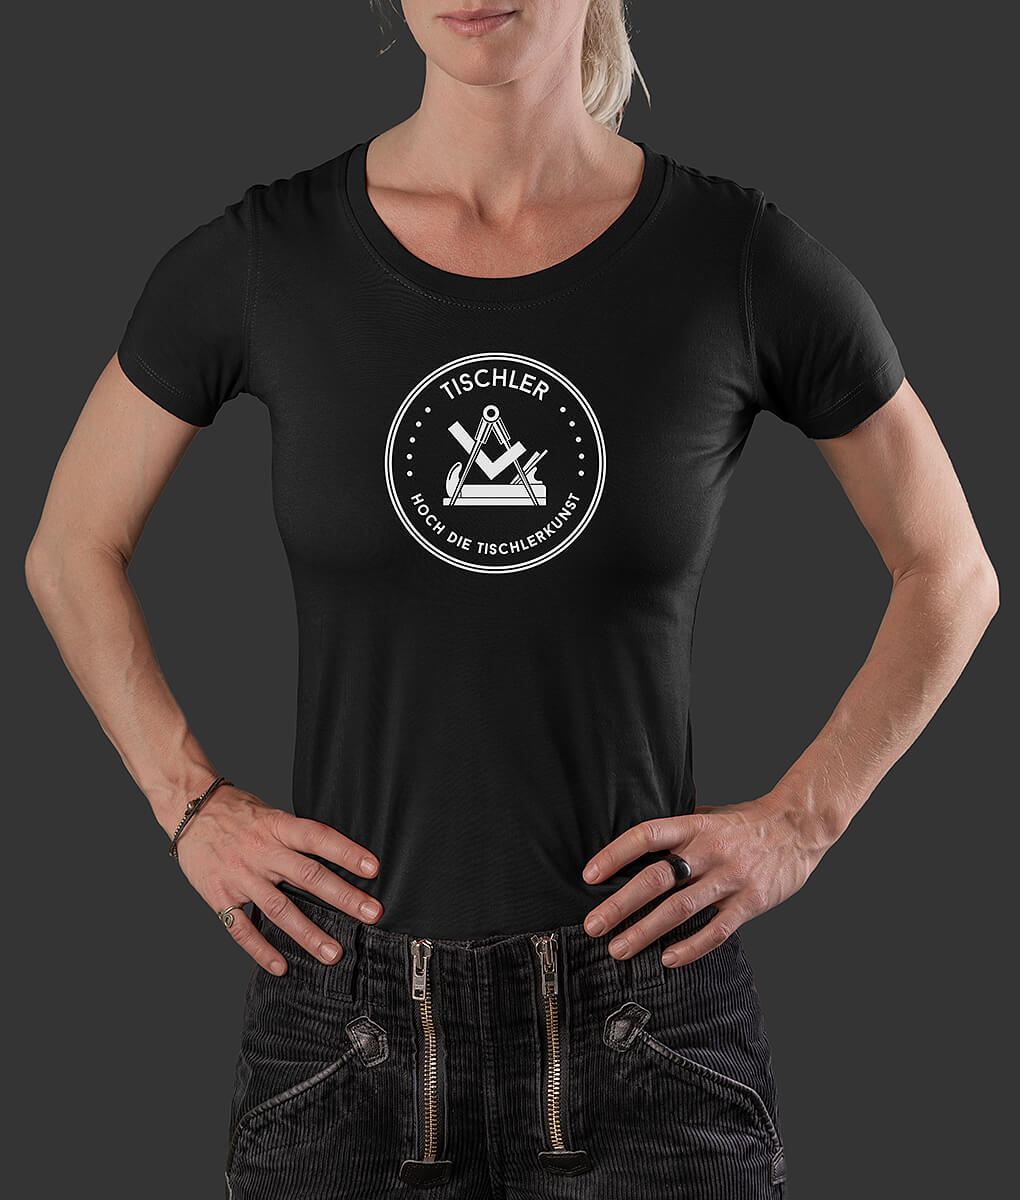 T-Shirt Louisa Siegel Tischler Brust schwarz S